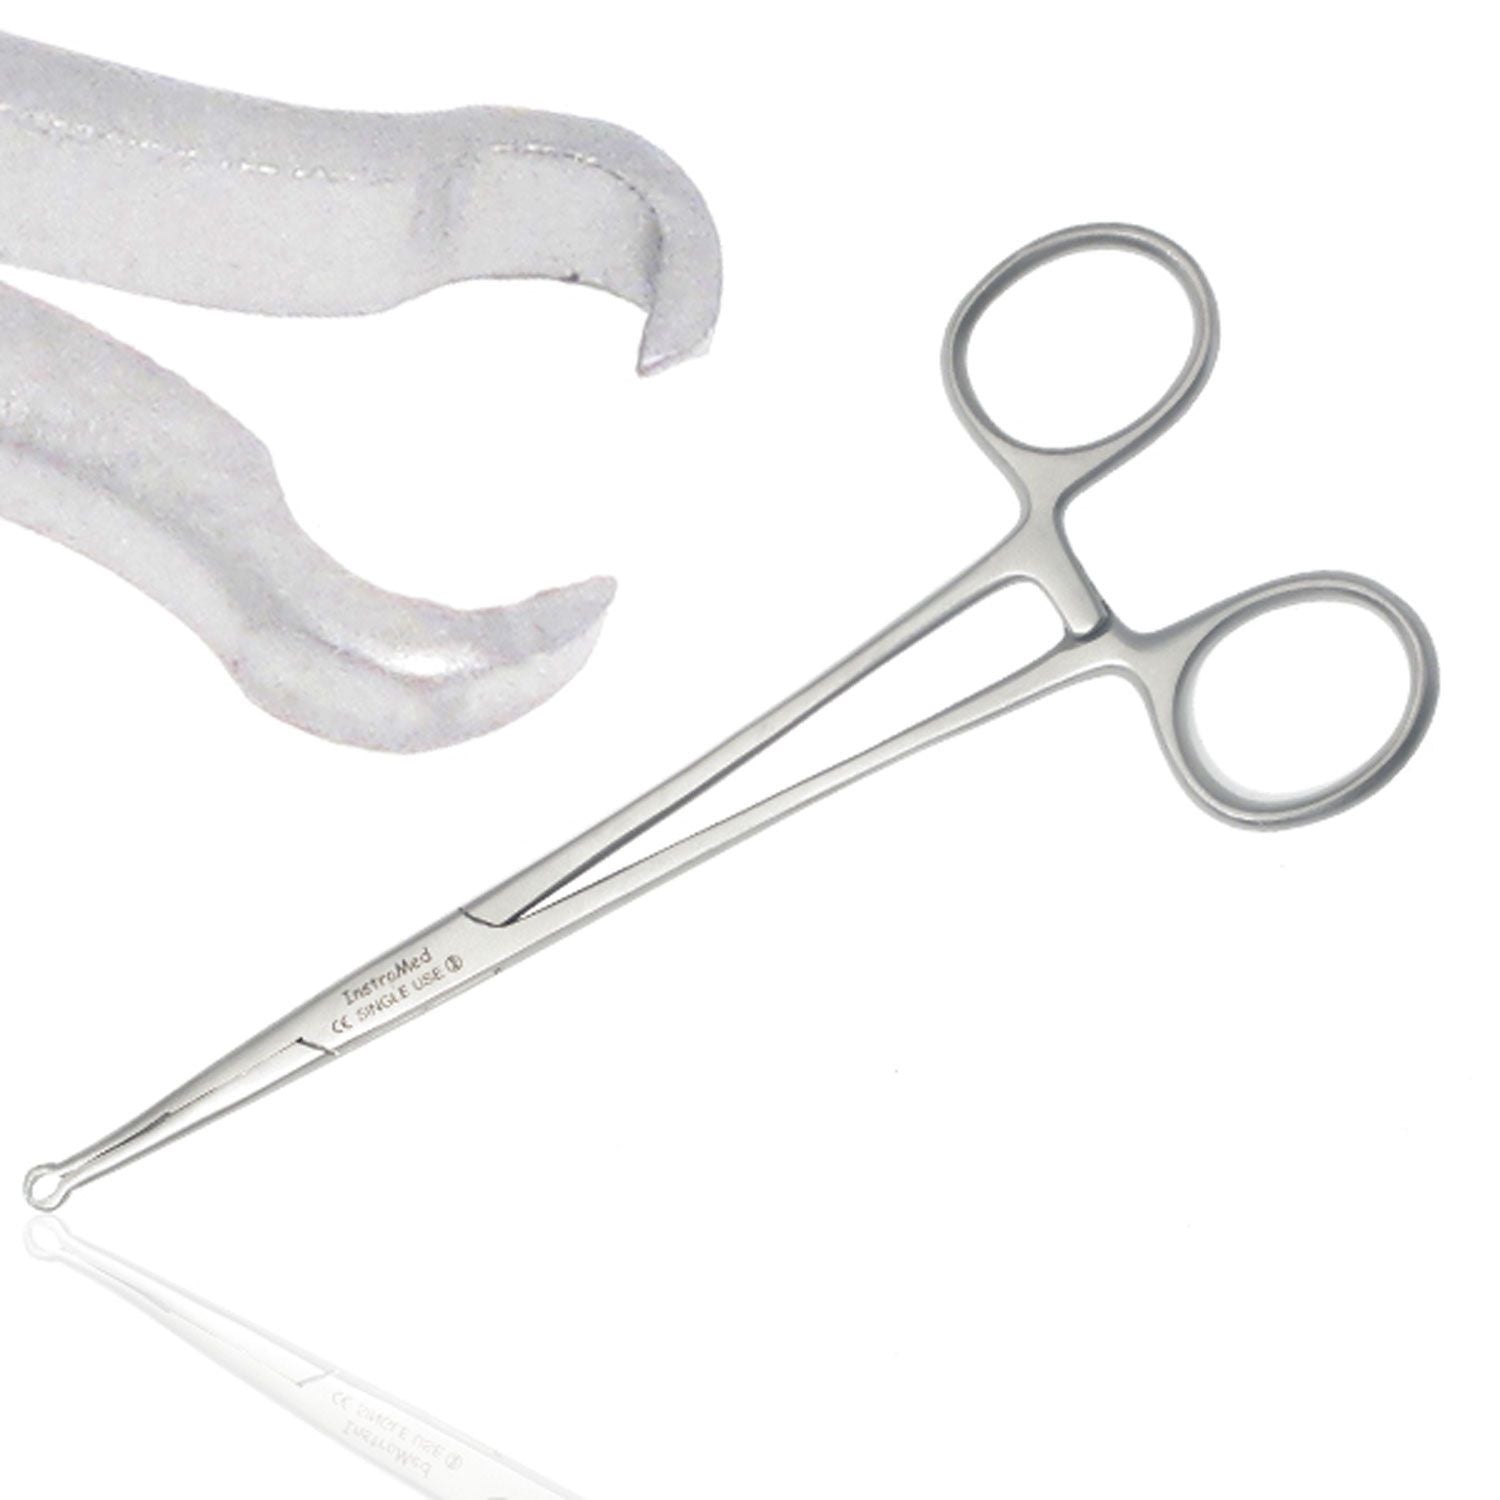 Instramed Vasectomy Forceps | Sharp/Sharp | 15.5cm | Single